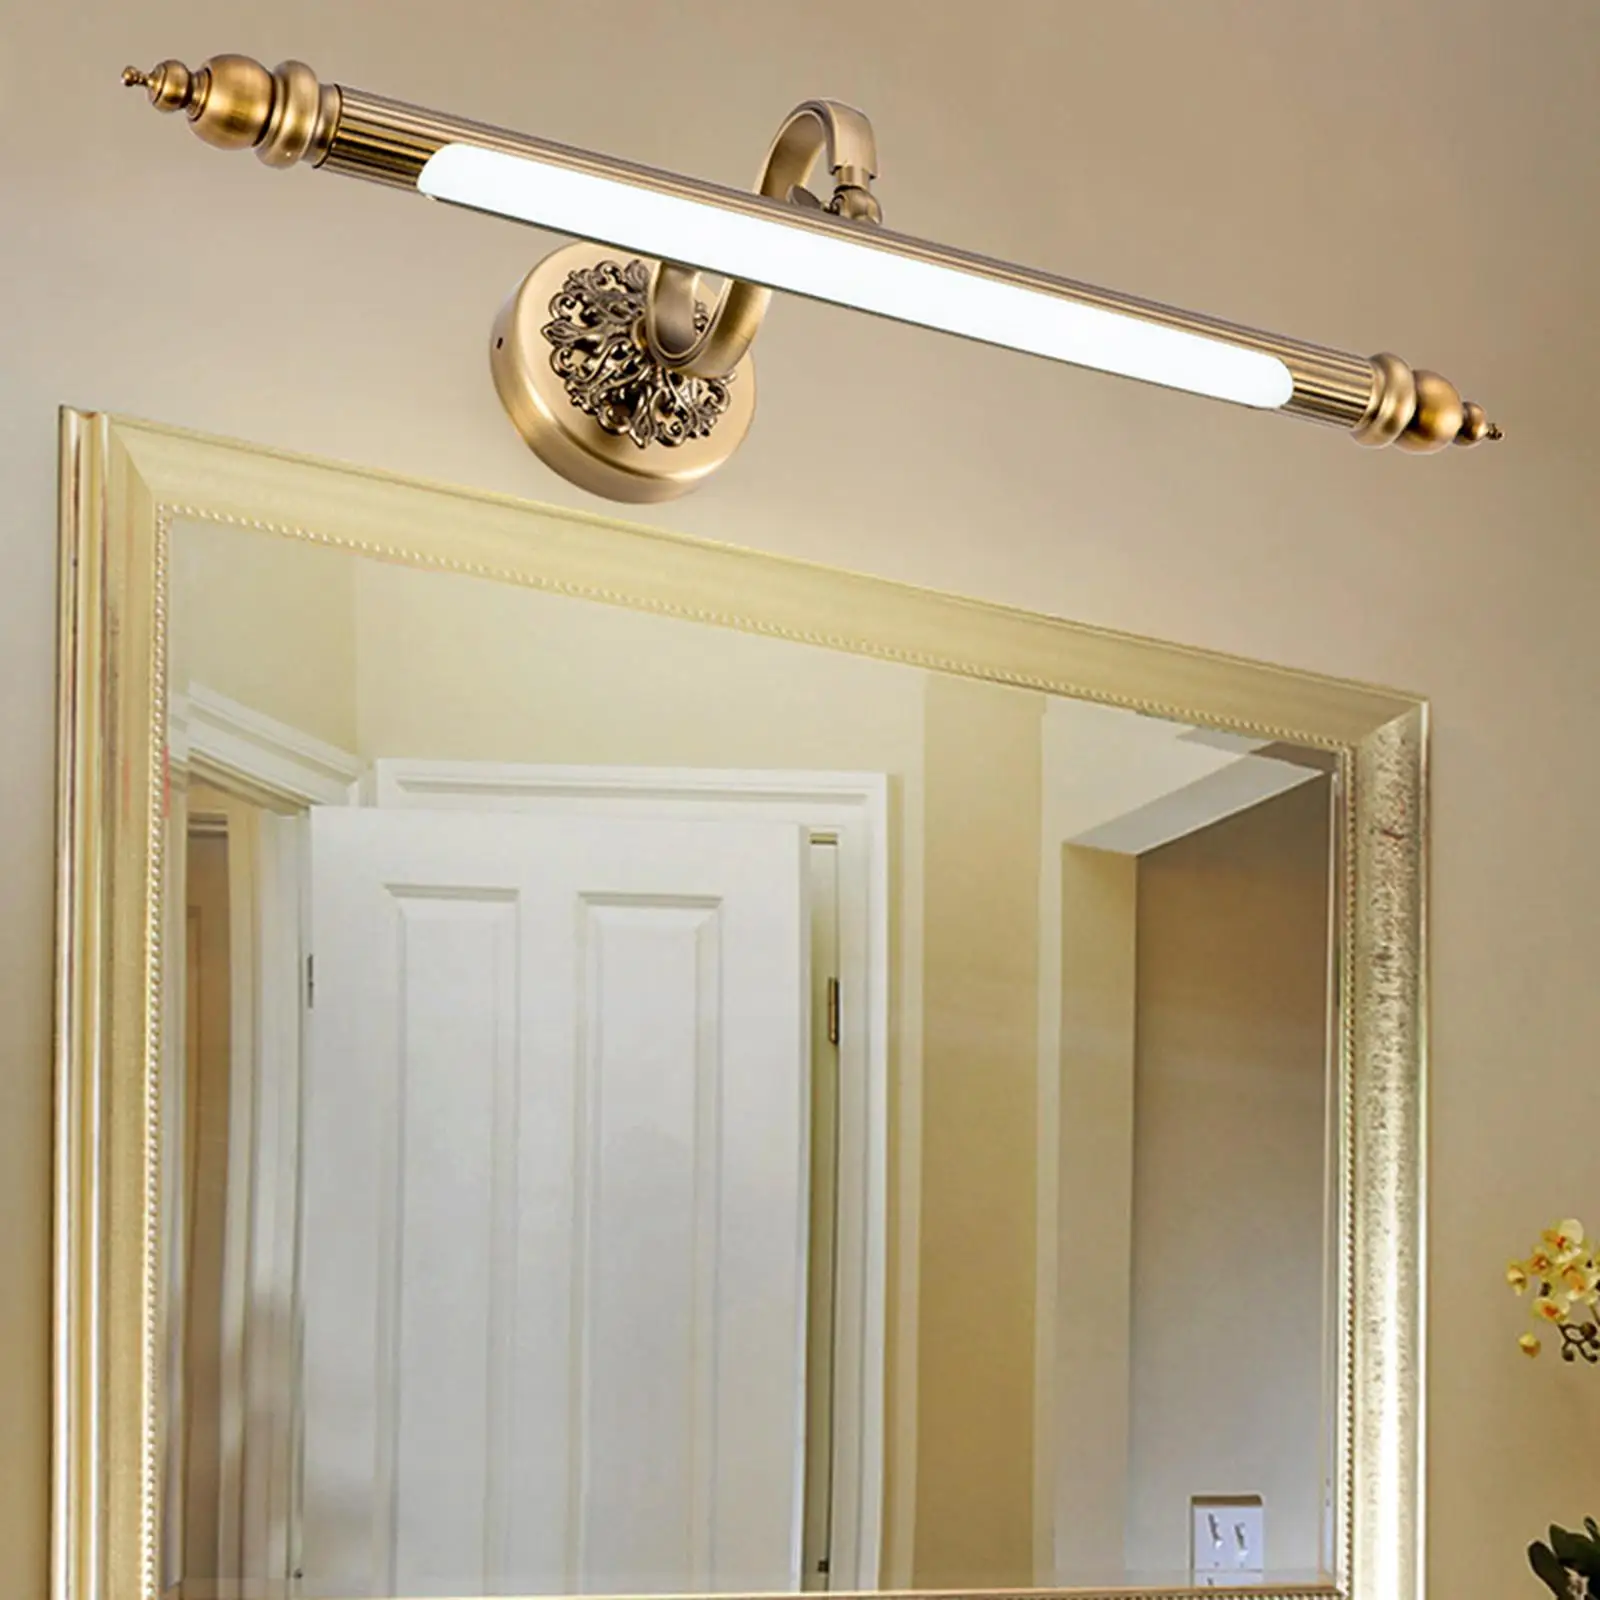 Retro Wired LED Mirror Light Adjustable Metal Rustproof Vanity Lighting Light for Bedroom Bathroom Indoor Theater Hallway Hotel